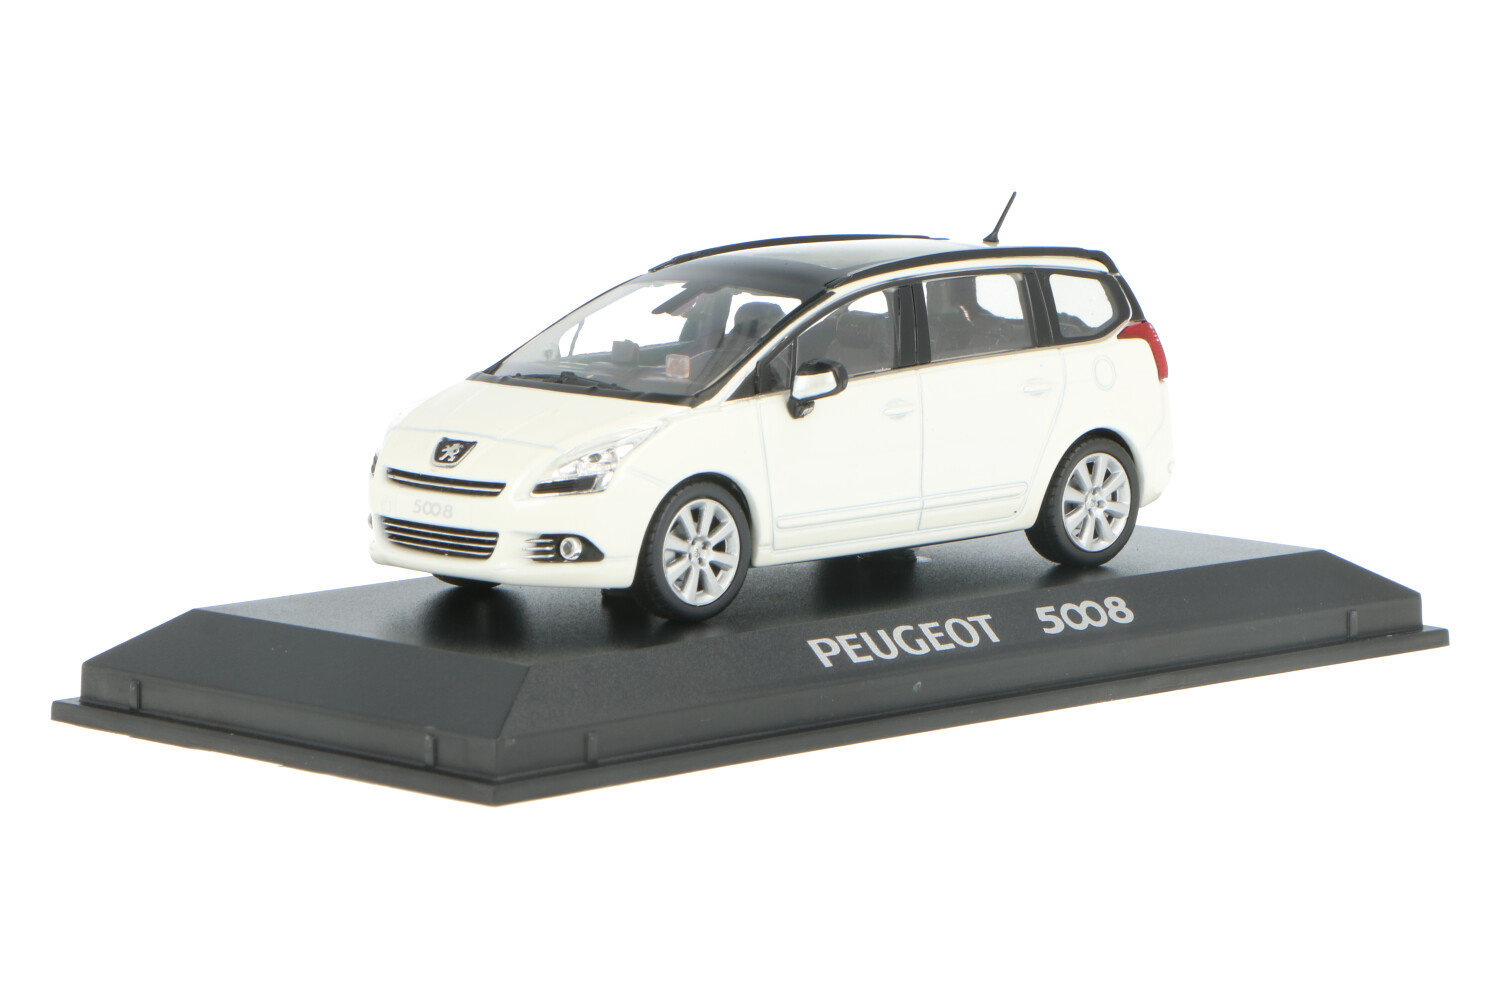 Peugeot 5008 - Modelauto schaal 1:43